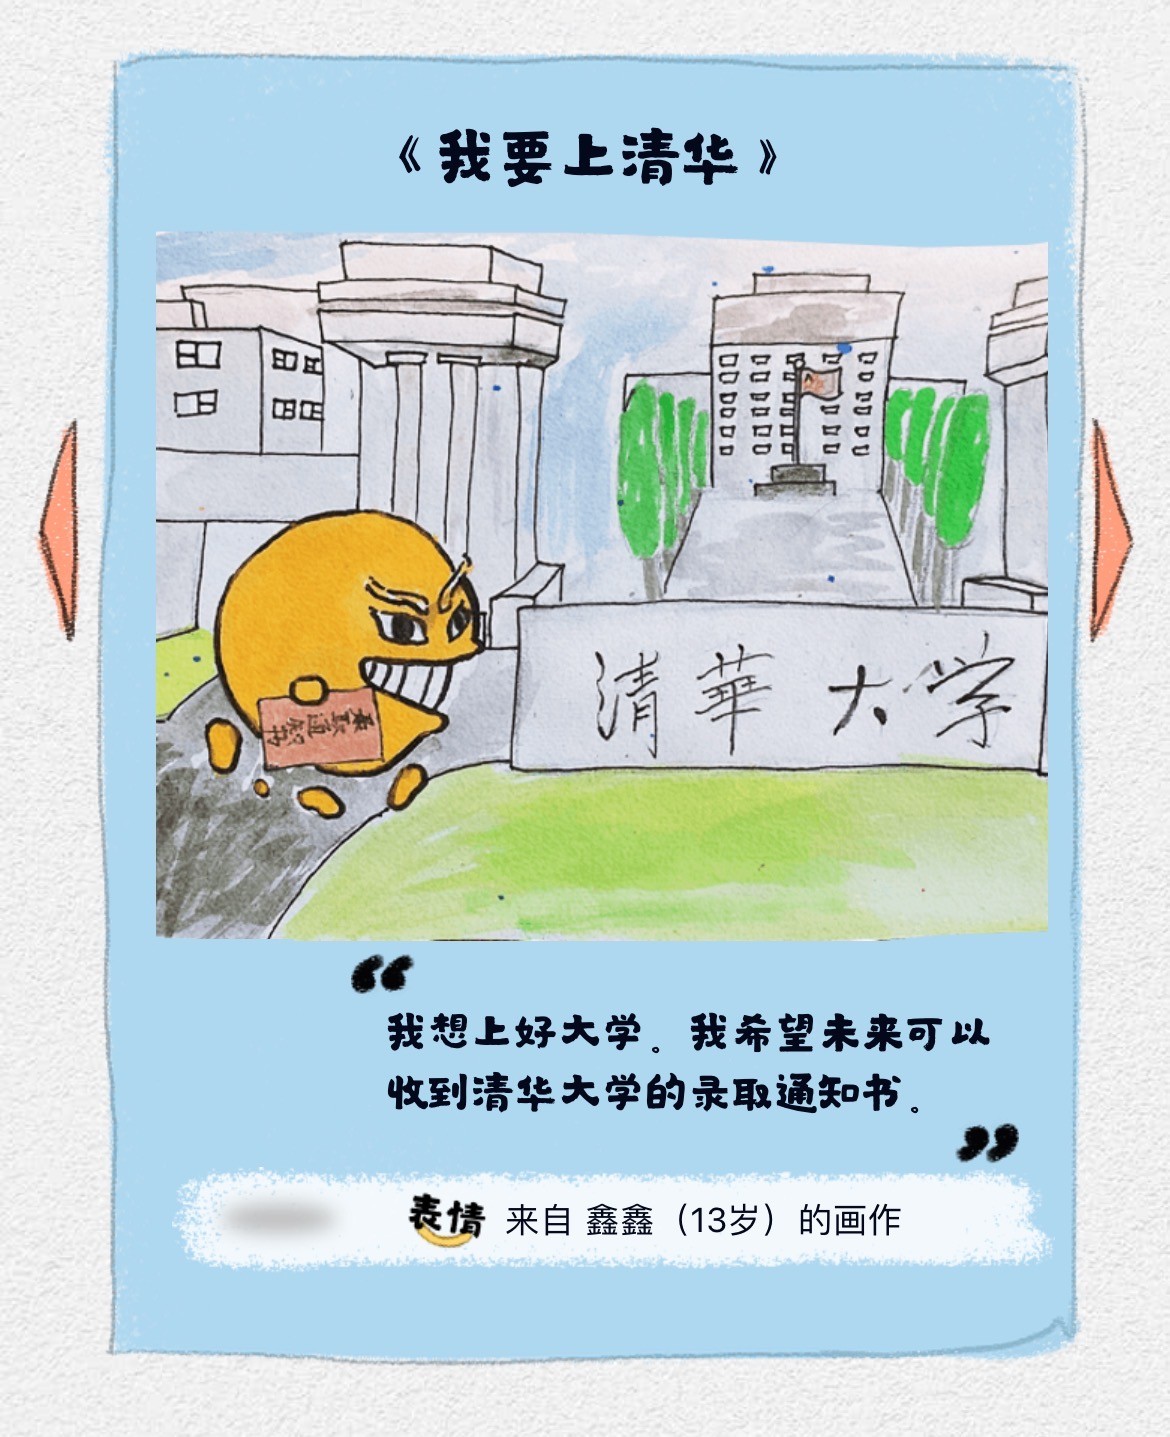 99公益日以画圆梦，腾讯QQ推出圆梦表情包